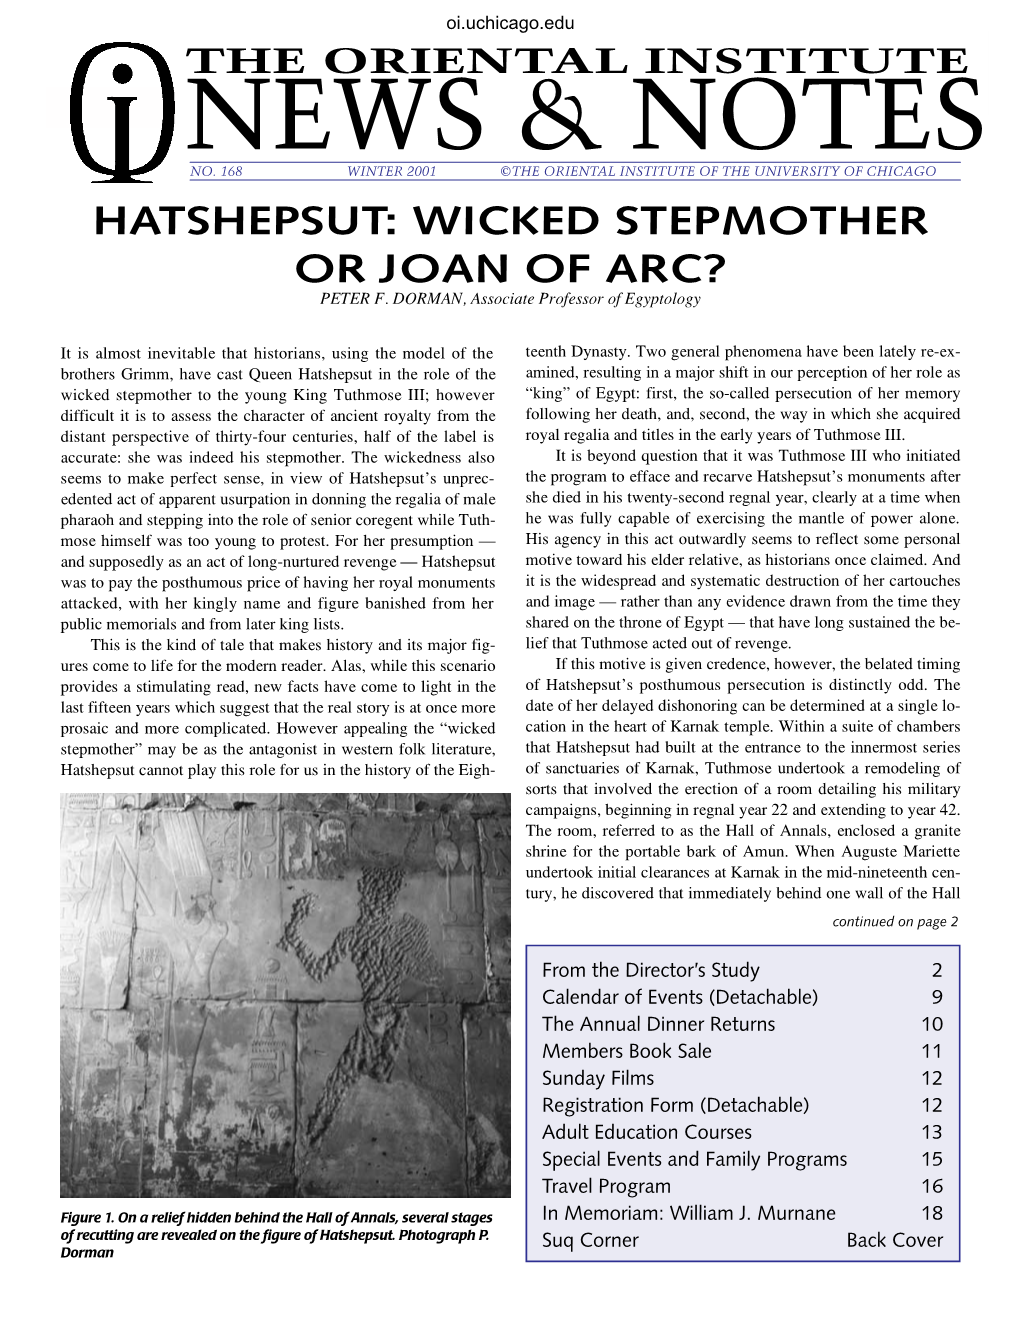 2001: Hatshepsut